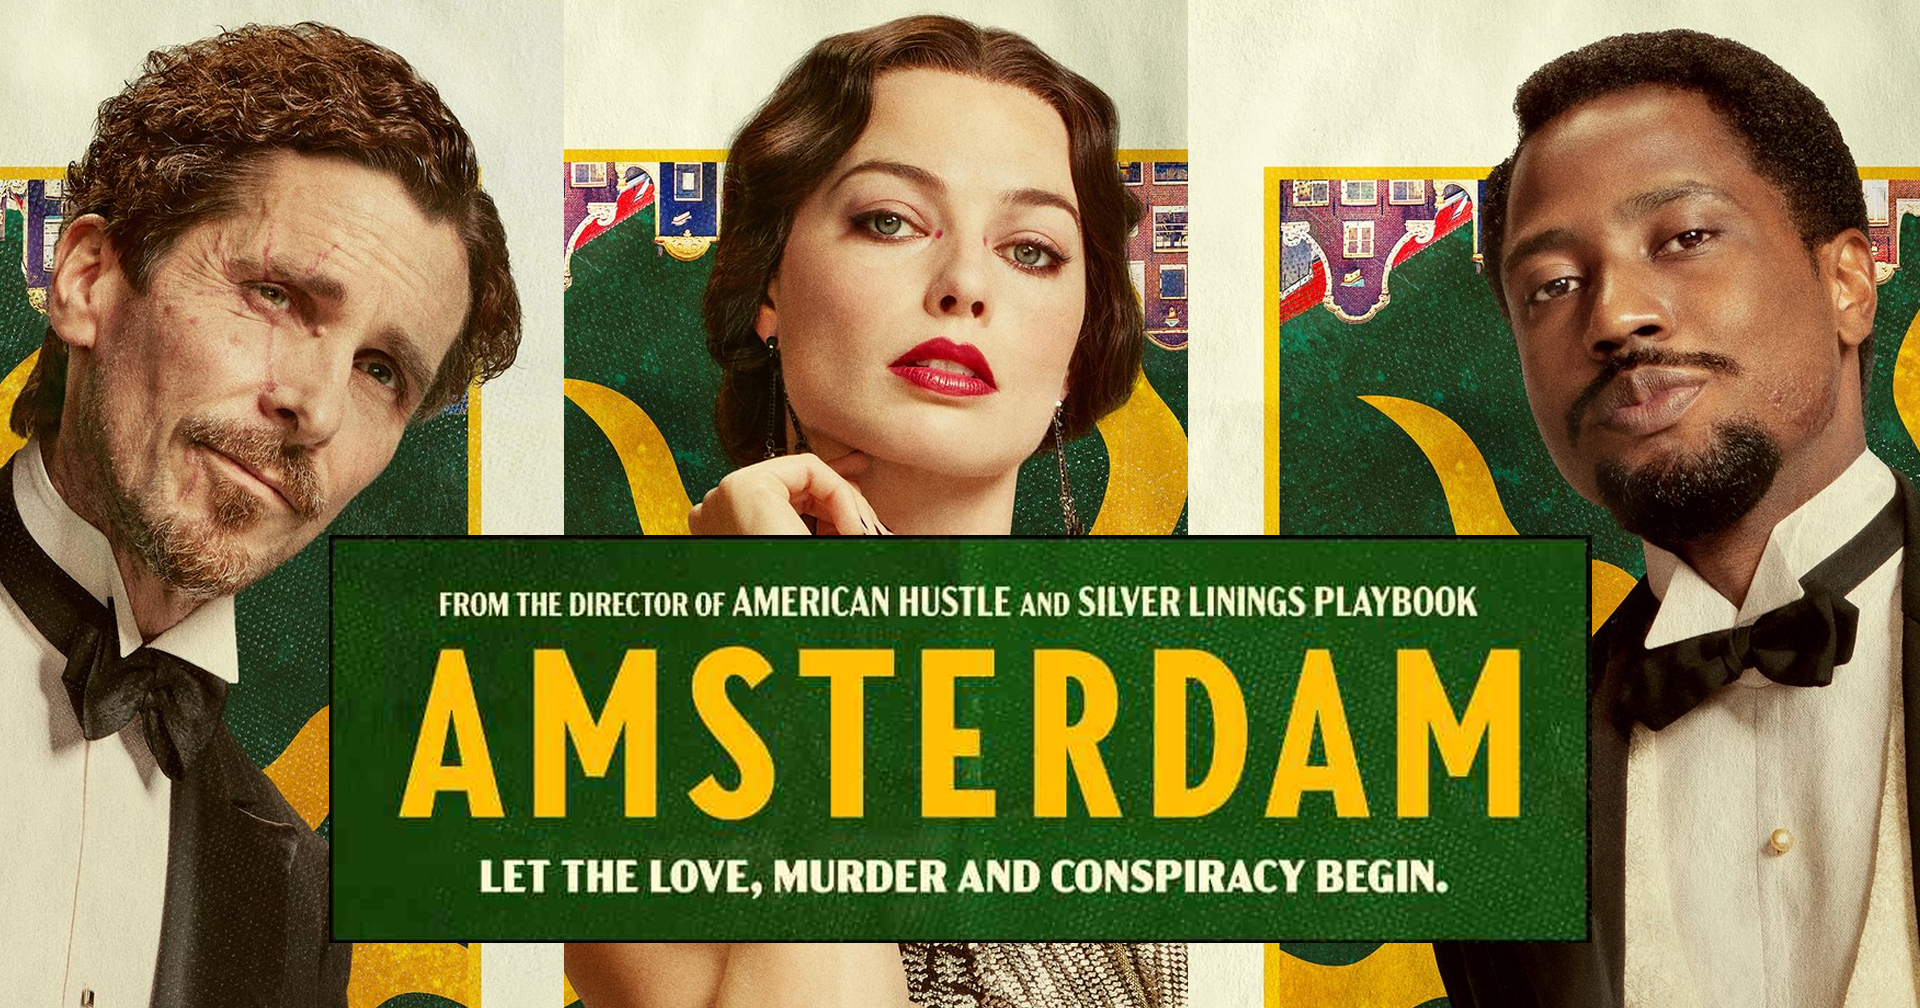 เปิดตัวโปสเตอร์ ‘Amsterdam’ หนังอาชญากรรมเรื่องใหม่ ที่มัดรวมนักแสดงมากฝีมือไว้ในเรื่องเดียว